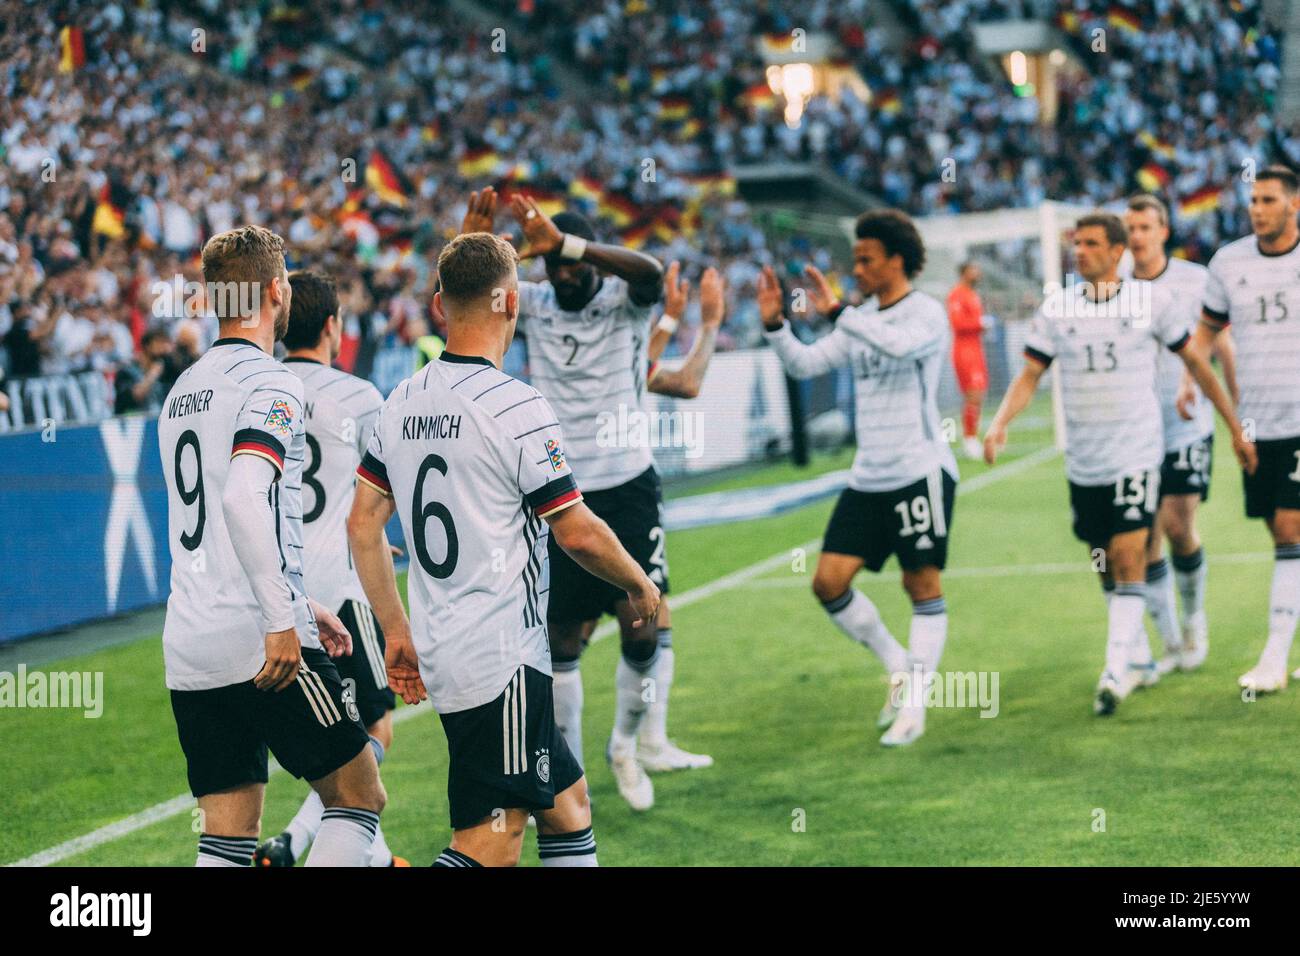 Mönchengladbach, Borussia-Park, 14.06.22: Jubel nach einem Tor bei Deutschland beim Länderspiel zwischen Deutschland vs. Italien. Foto: Pre Stockfoto